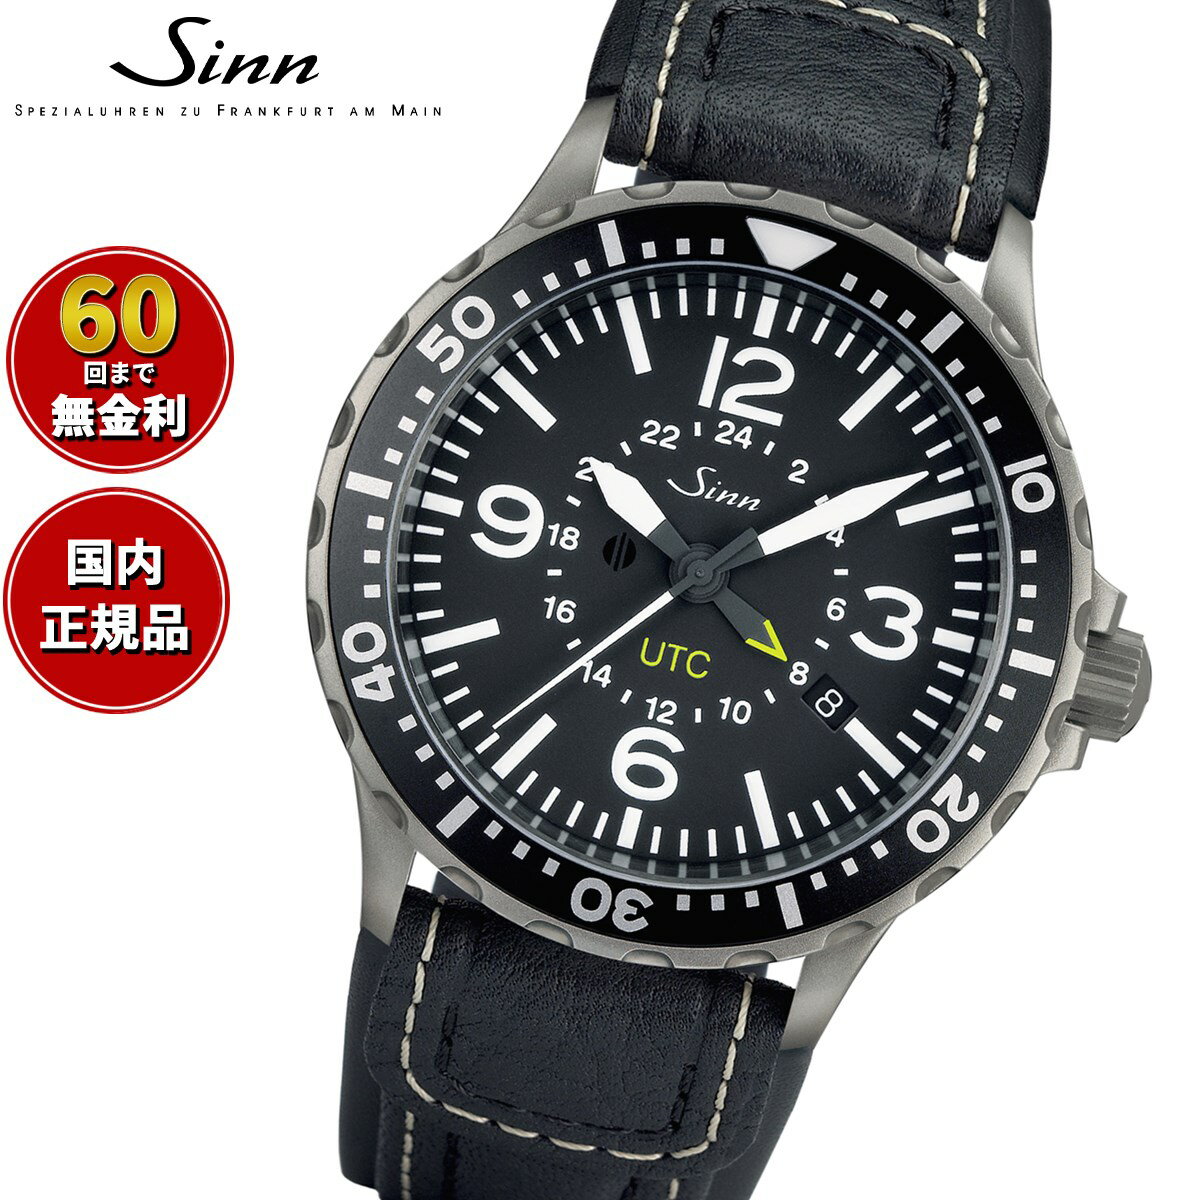 ジン 【選べるノベルティー付き！】【60回分割手数料無料！】Sinn ジン 857 自動巻き 腕時計 メンズ Instrument Watches インストゥルメント ウォッチ インテグレーションカウレザーストラップ ドイツ製